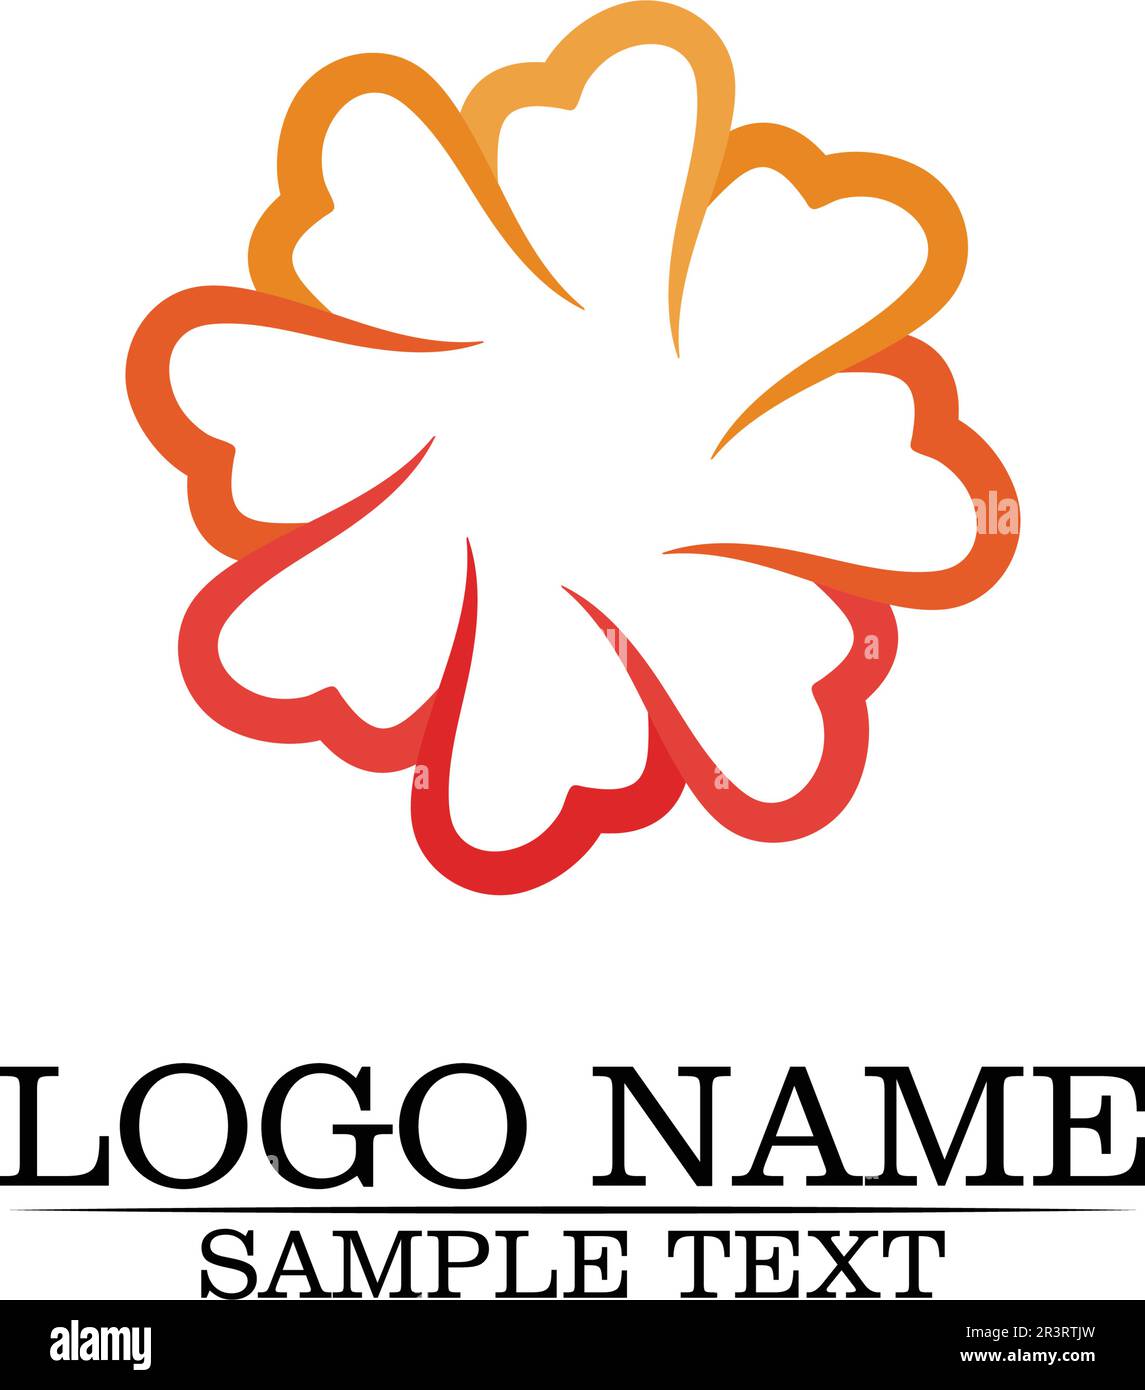 Vecteur - ensemble vectoriel de motifs floraux sur fond blanc Illustration de Vecteur